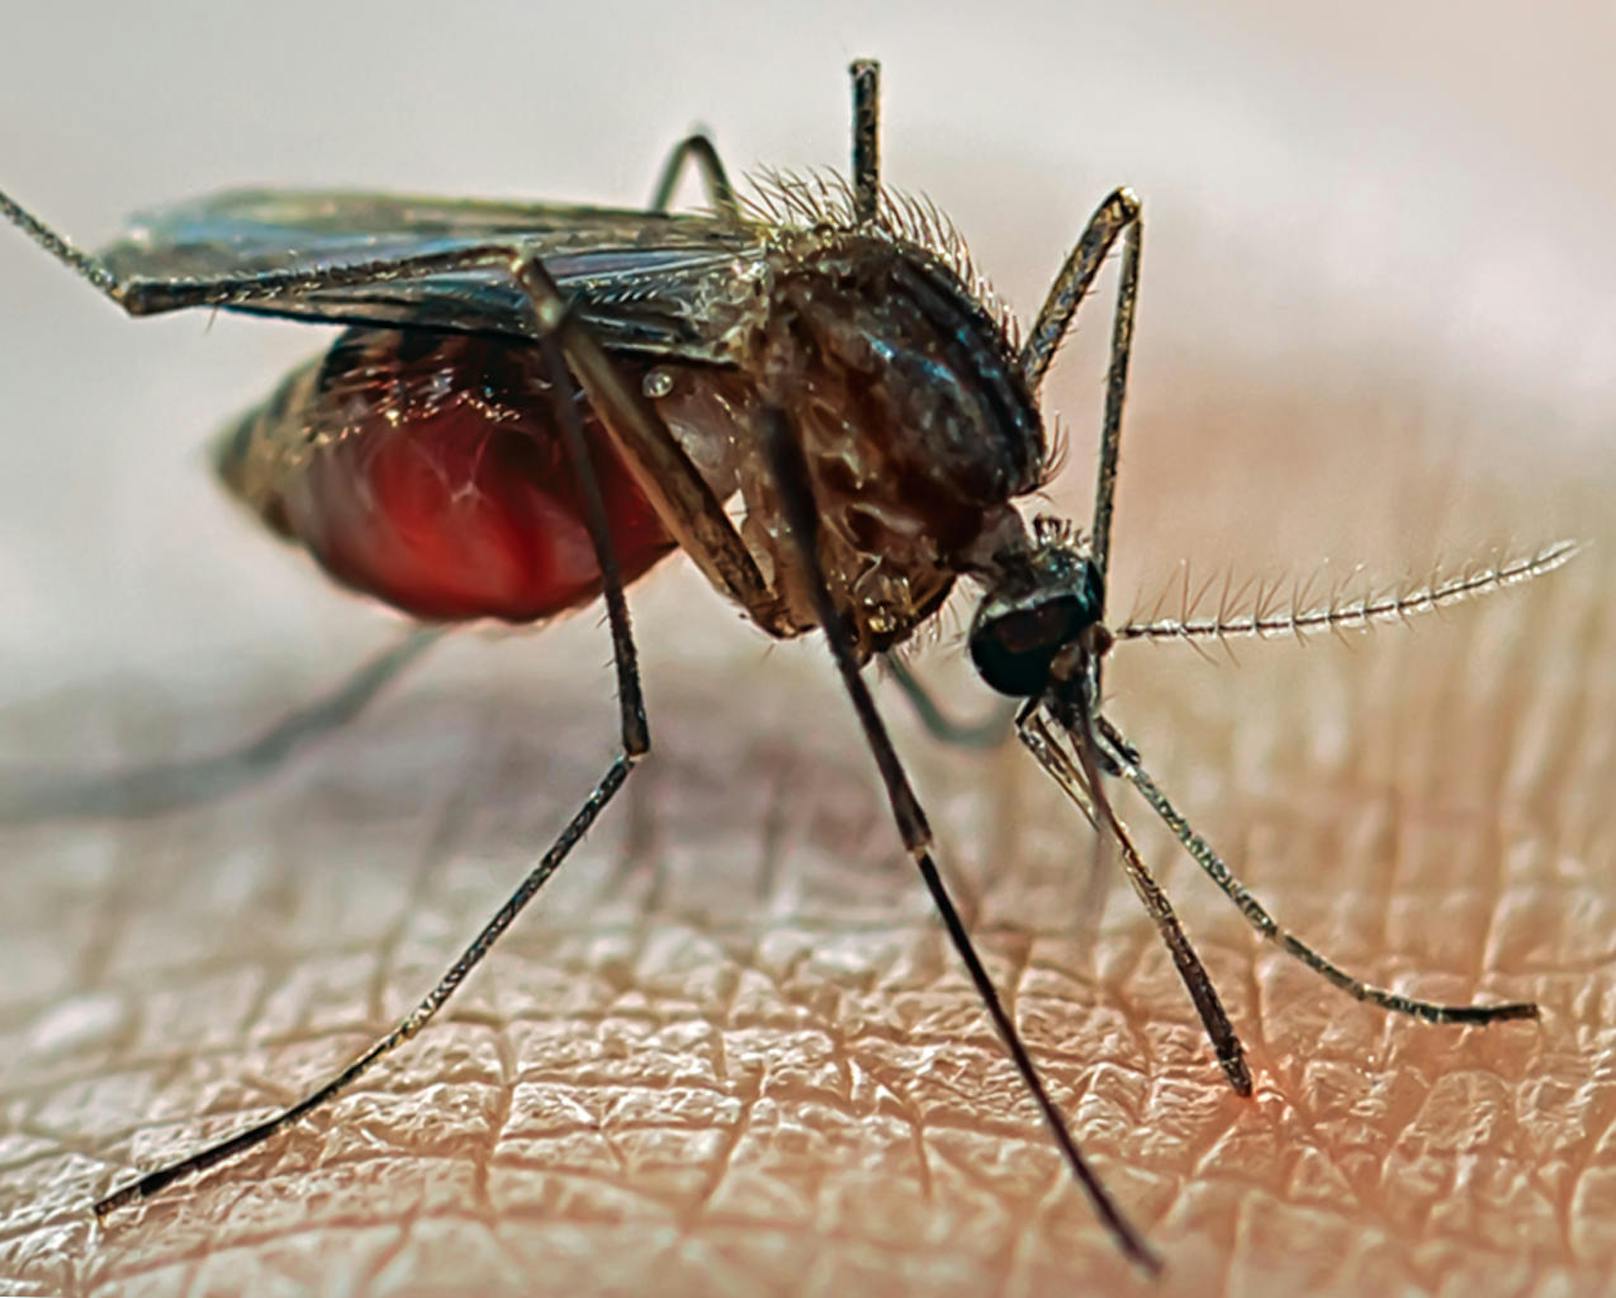 Um noch mehr nährstoffreiche rote Blutkörperchen aufnehmen zu können, trennt die Mücke Wasser vom angesaugten Blut und scheidet es hinten aus.